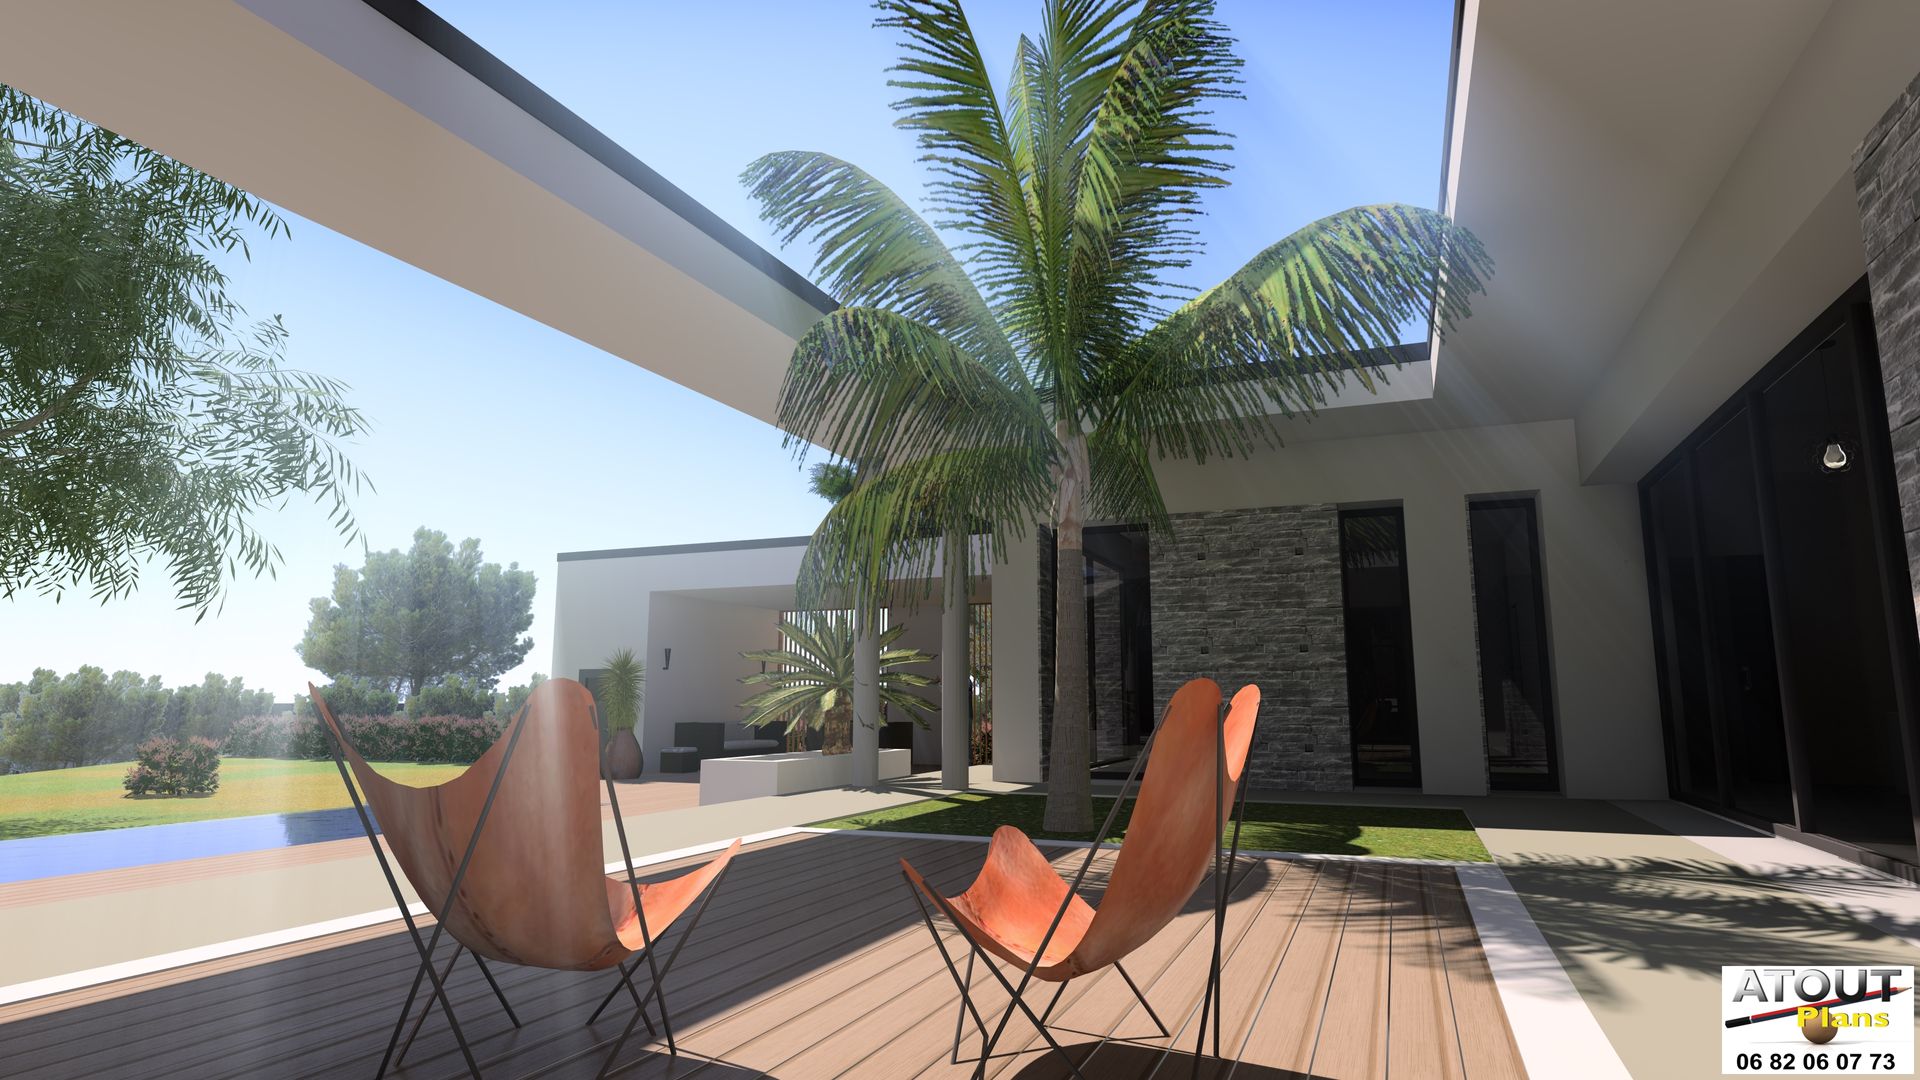 Conception moderne d’une villa avec piscine, Atoutplans Architecture Atoutplans Architecture Maisons modernes